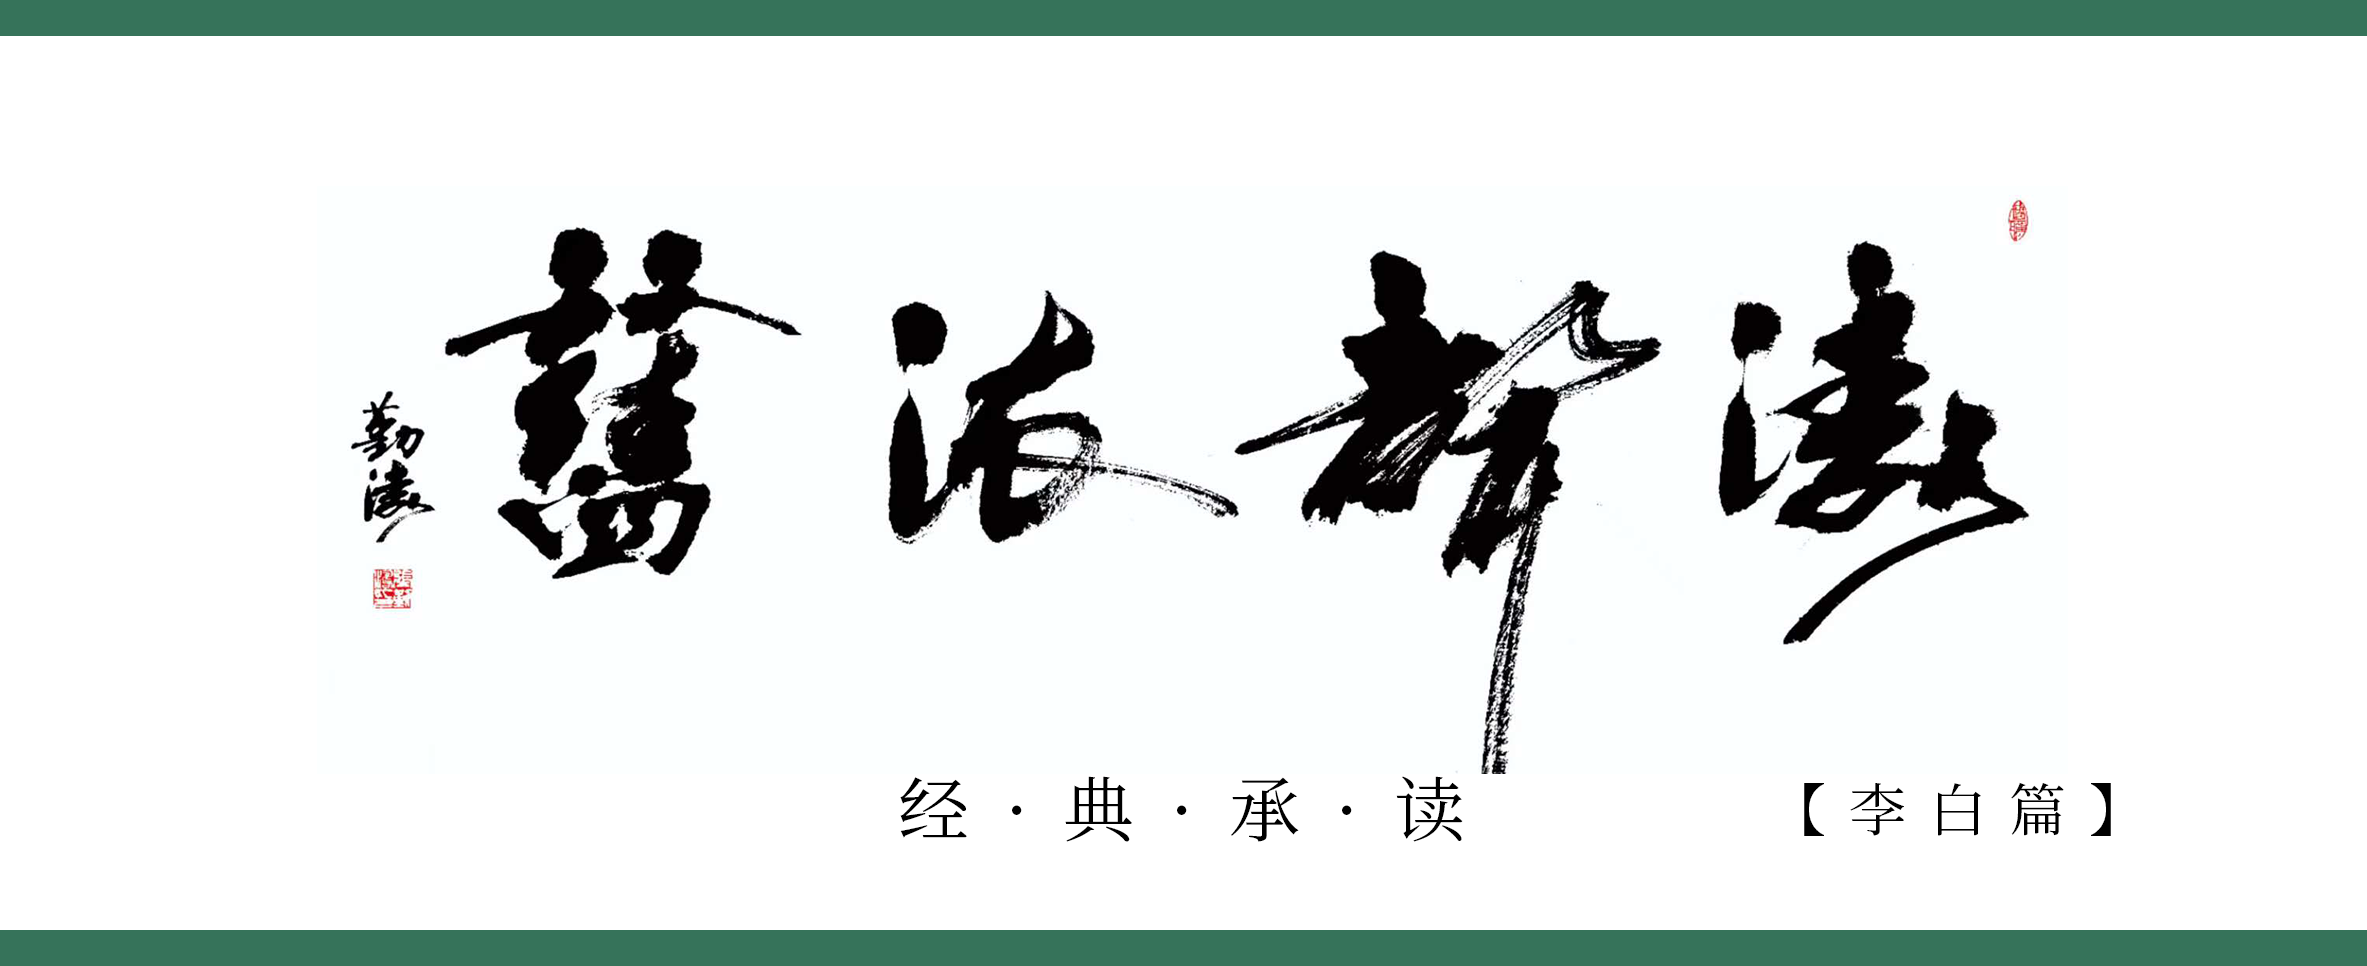 《涛声依旧 · 经典承读》——上皇西巡南京歌（其九）(图1)